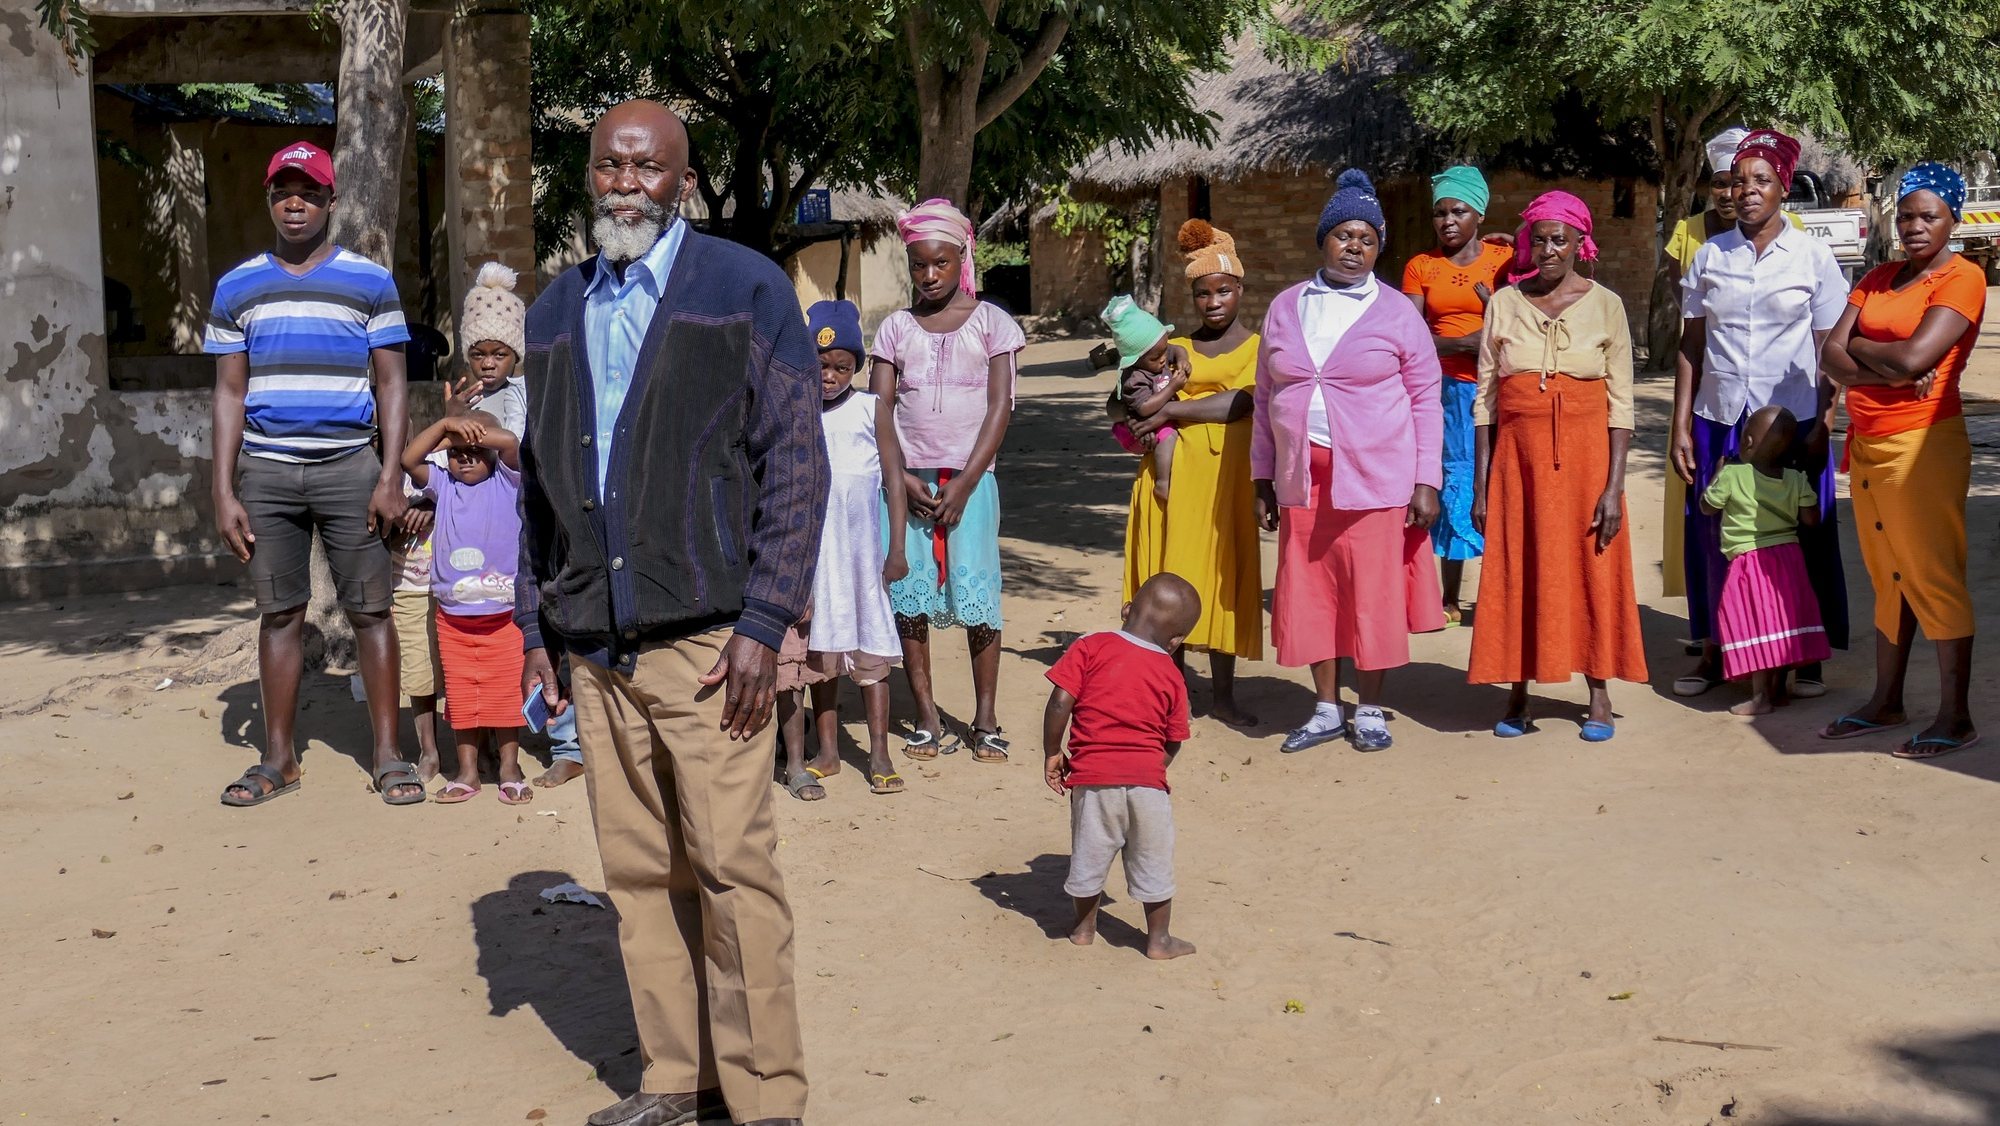 Pedro Faricai, 71 anos, polígamo, posa para a fotografia na aldeia de Mpandeia, Chimoio, Moçambique, 01 de junho de 2022. Pedro Faricai, continua a espalhar romance com 13 esposas com quem partilha um punhado de habitações precárias em Mpandeia, aldeia encalhada na cordilheira que separa Moçambique e Zimbabué. (ACOMPANHA TEXTO DA LUSA DO DIA 02 DE JULHO DE 2022). ANDRÉ CATUEIRA/LUSA